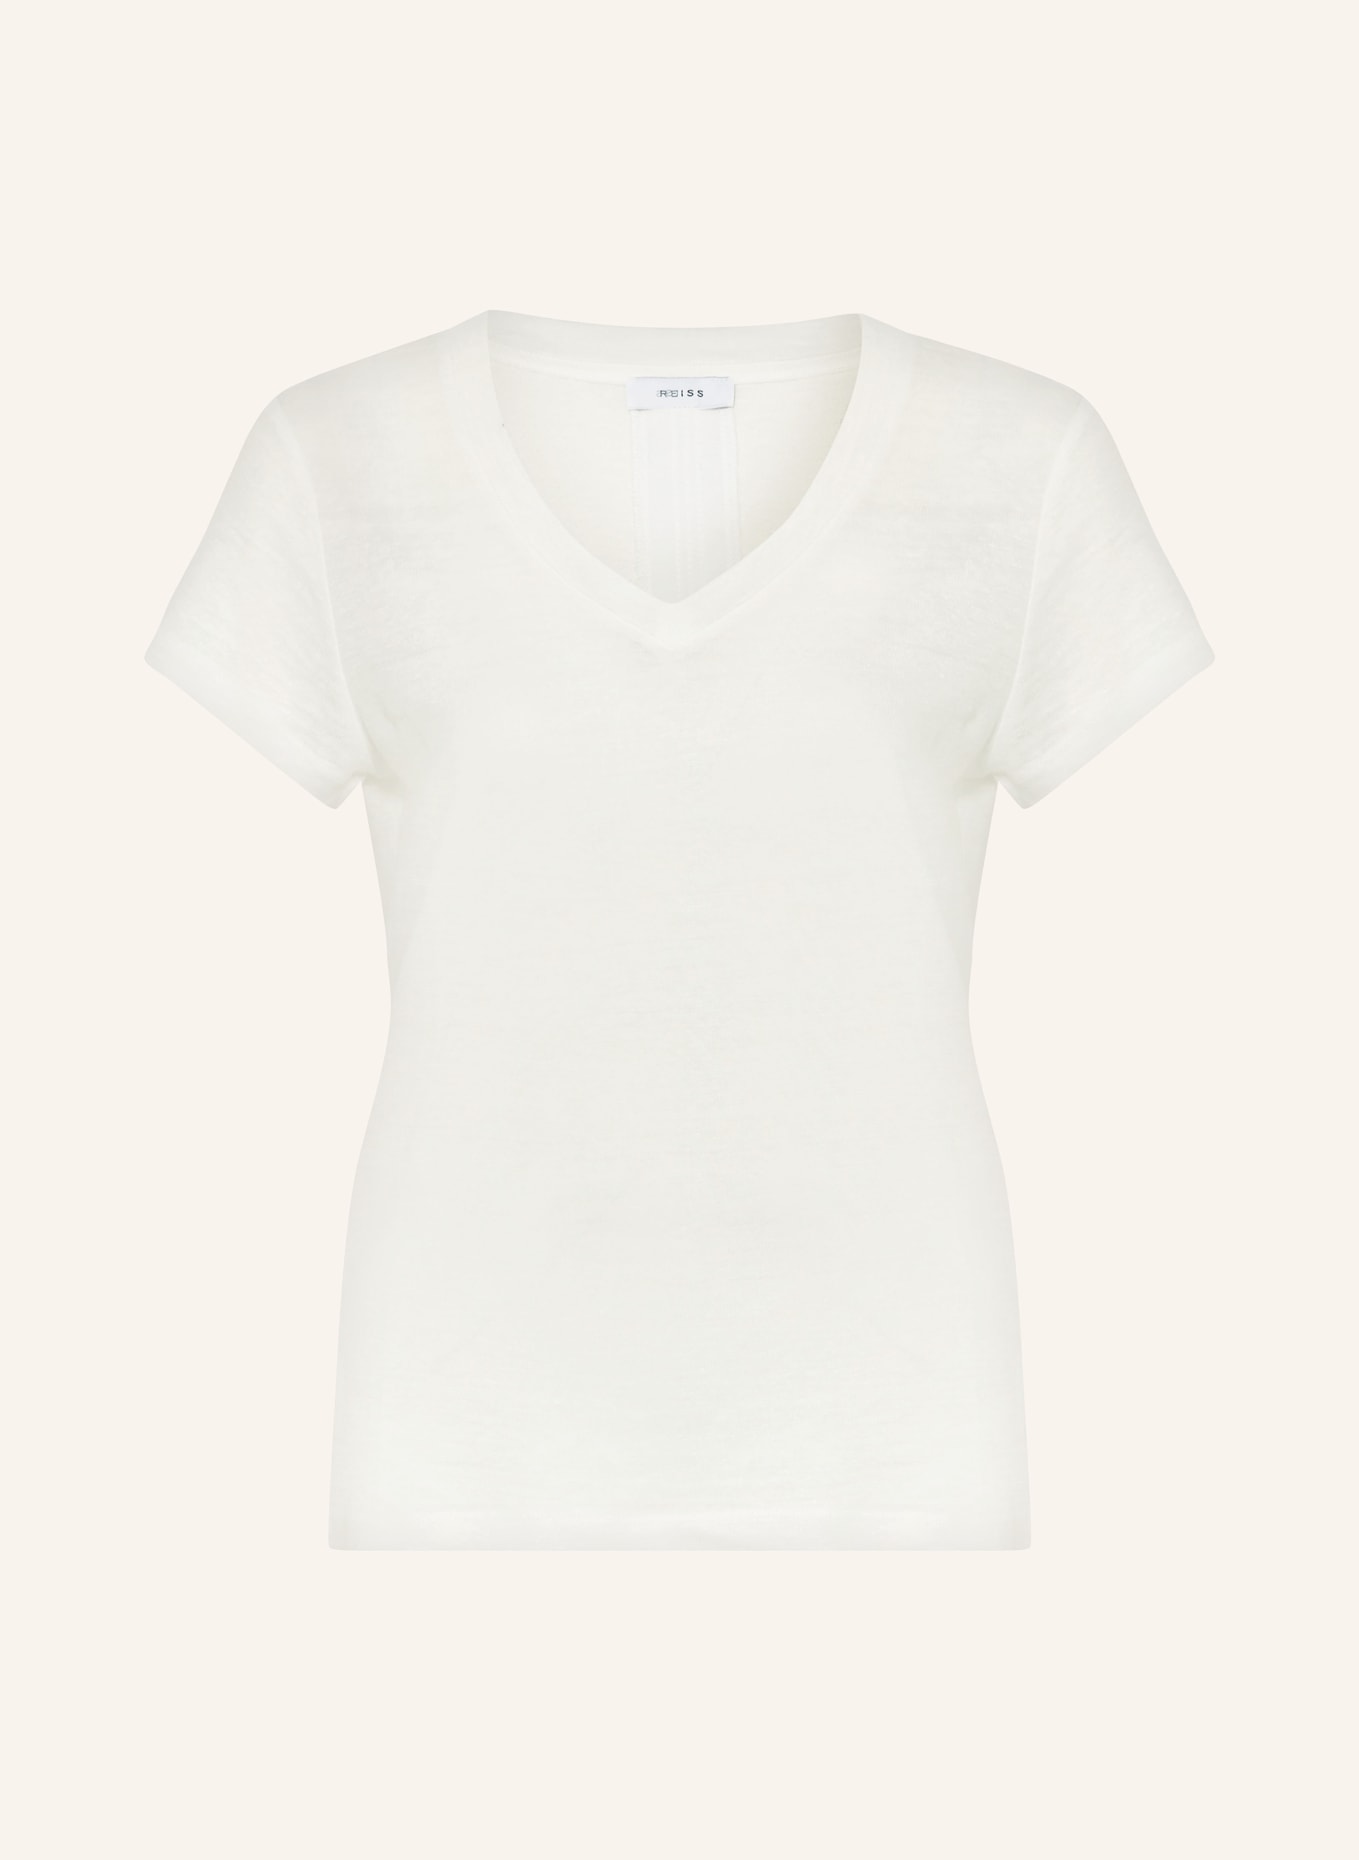 REISS T-Shirt LOTTIE aus Leinen, Farbe: CREME (Bild 1)